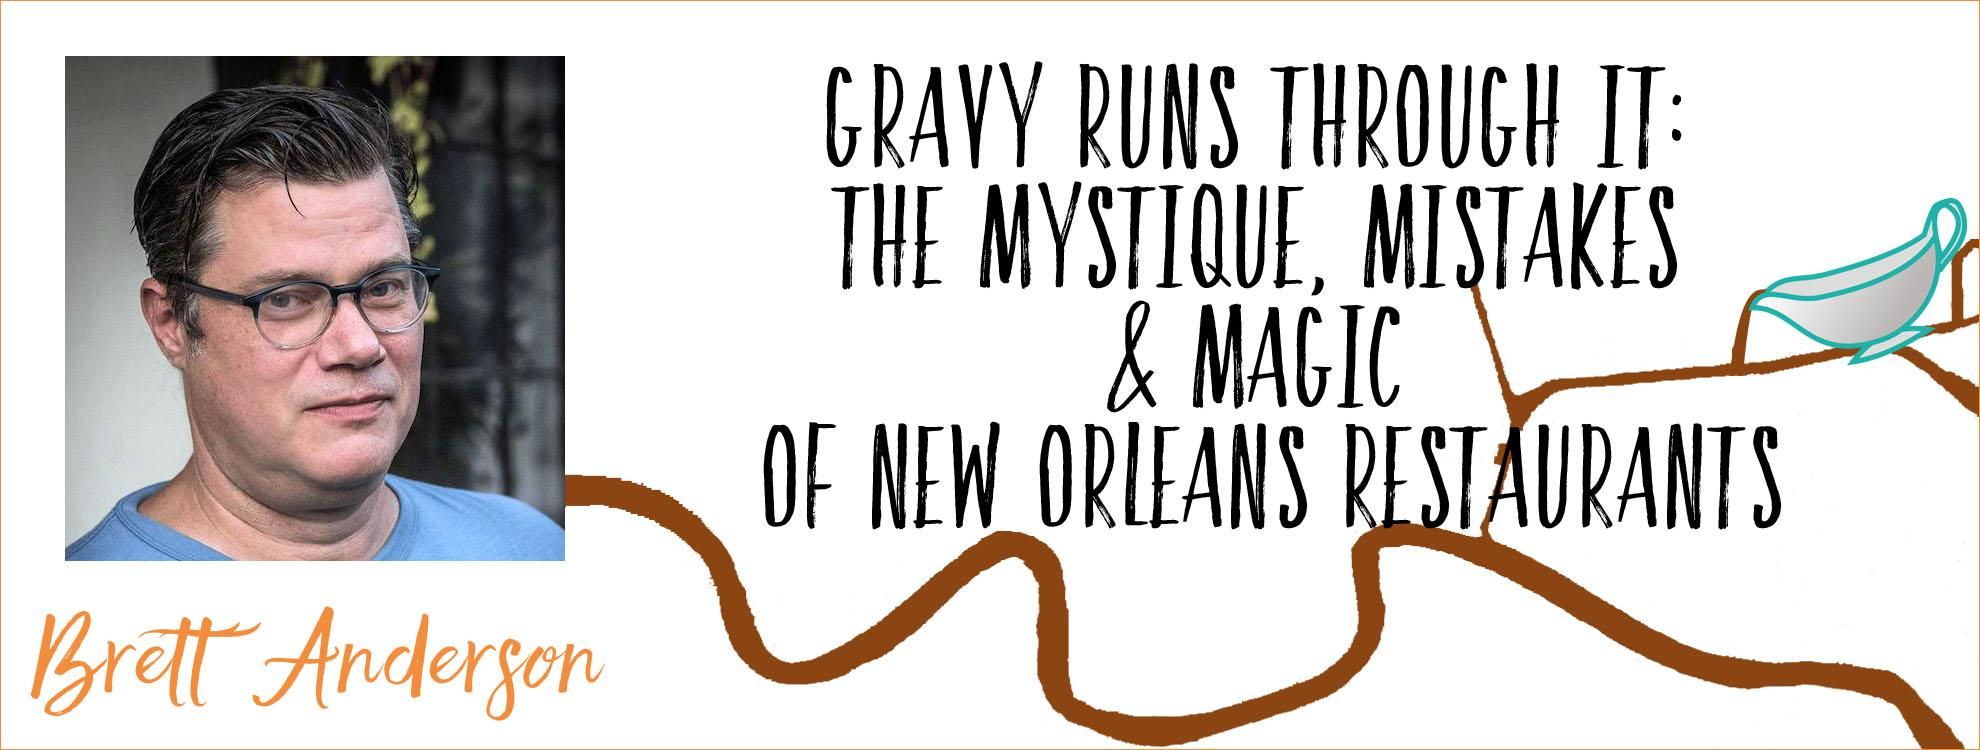 Gravy Runs Through It: Brett Anderson’s New Orleans